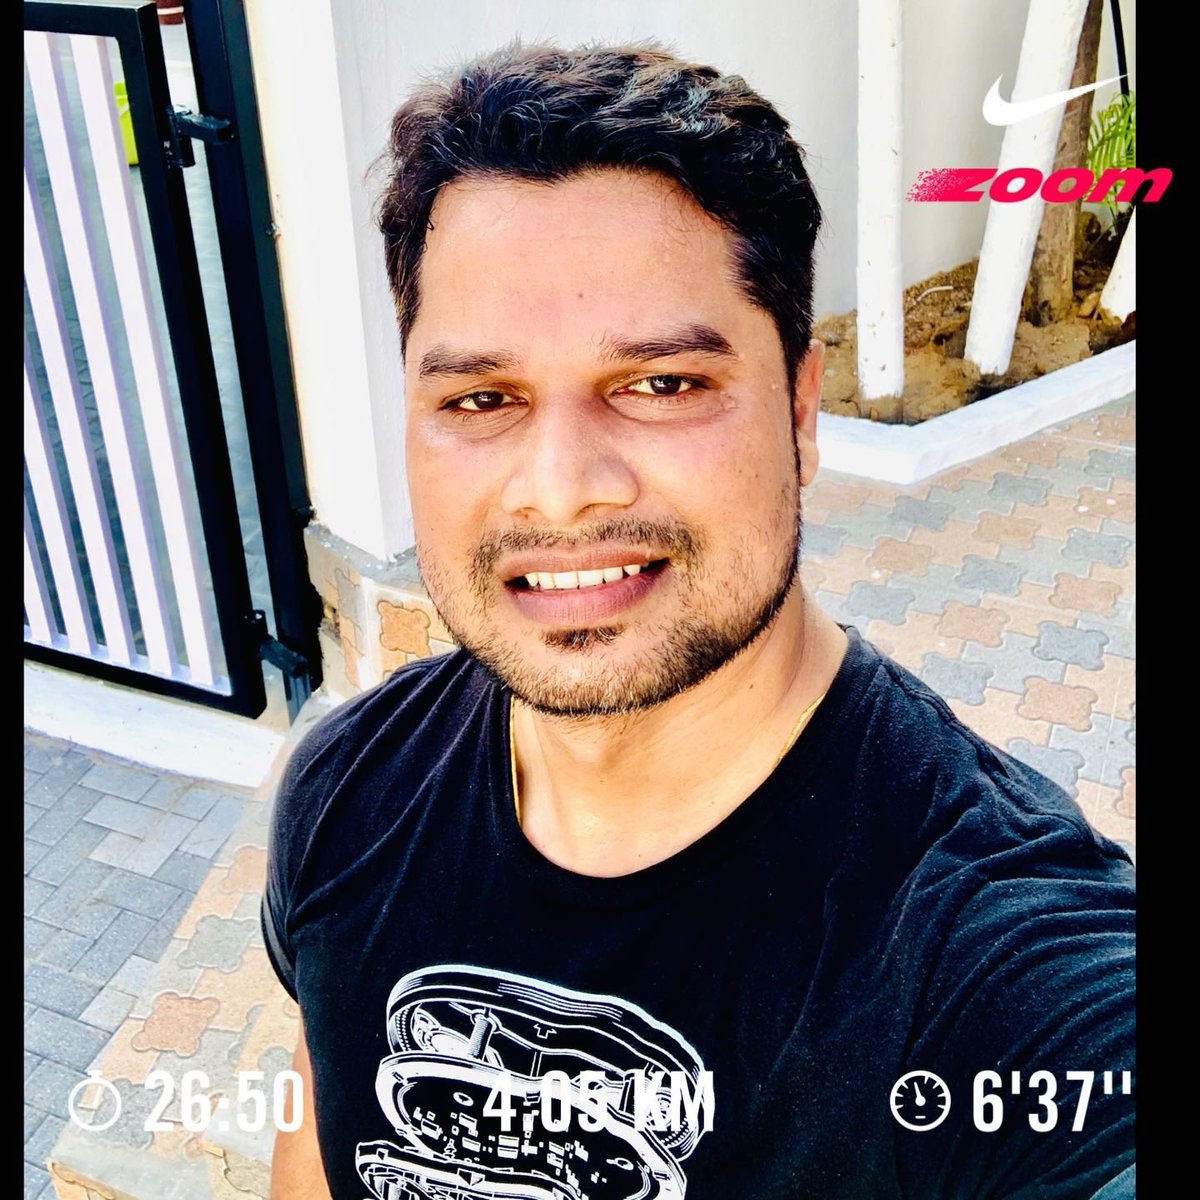 #03rd_Run_Apr #4.0K #JustDoIt #WarmupRun  🔥 run 🏃🏻‍♂️ #TreadmillRun #nike  #nikerun #morningrun  #Indoor  #nikerunning  #exercise #fitness #nikeplusrunning #clubhouse #marathon #Bengaluru 😊😅…